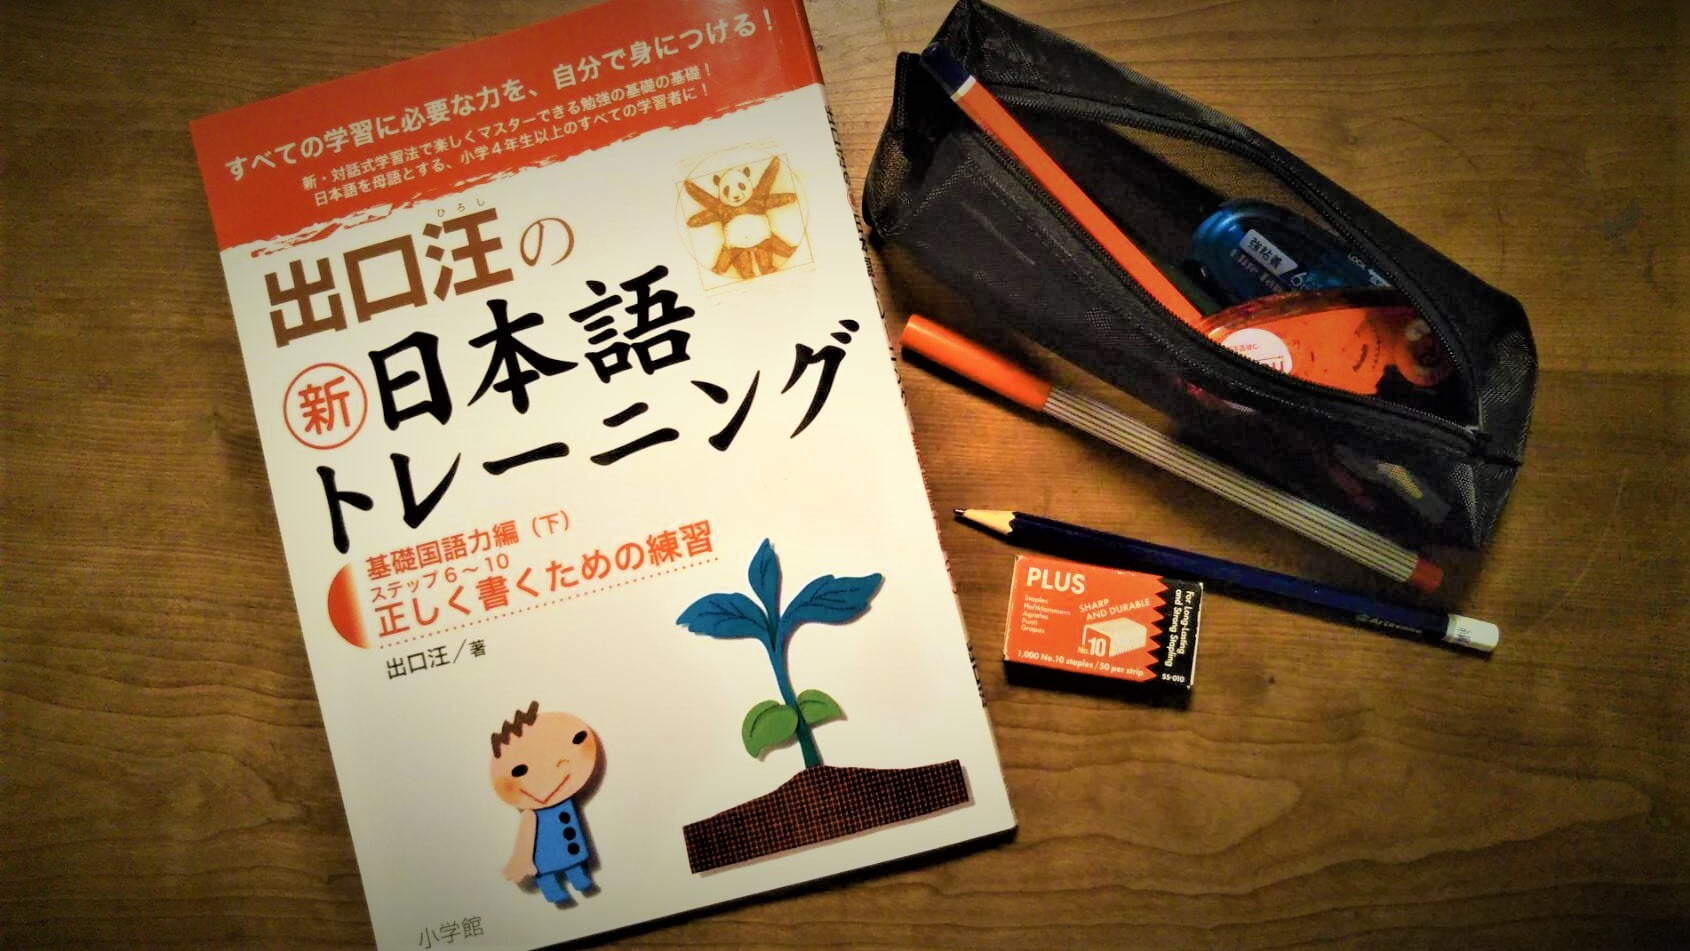 出口汪の新日本語トレーニング を使って論理的思考力 文章力を鍛えよう Chiik チーク 乳幼児 小学生までの知育 教育メディア